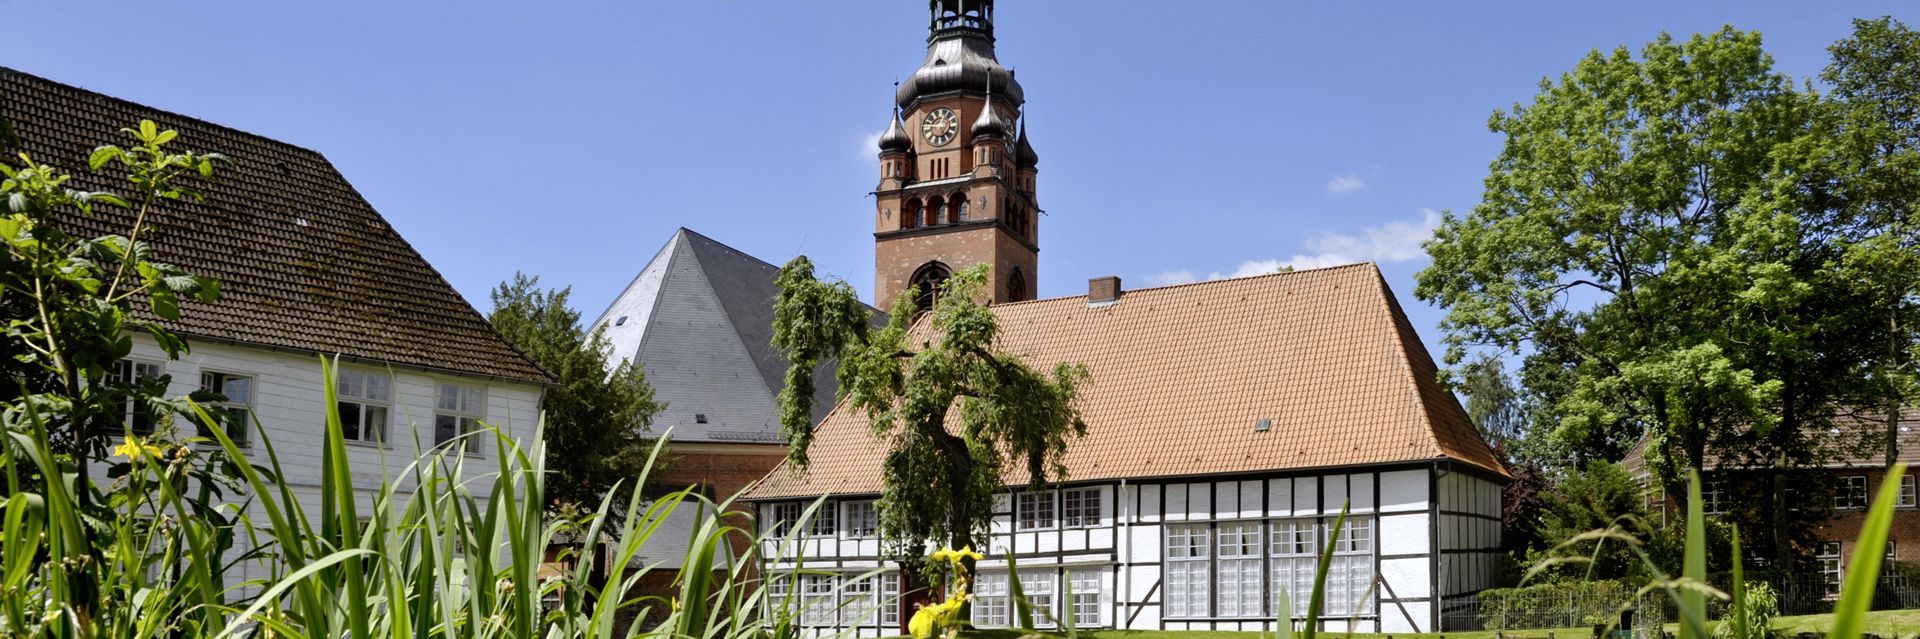 Klosterhof Itzehoe